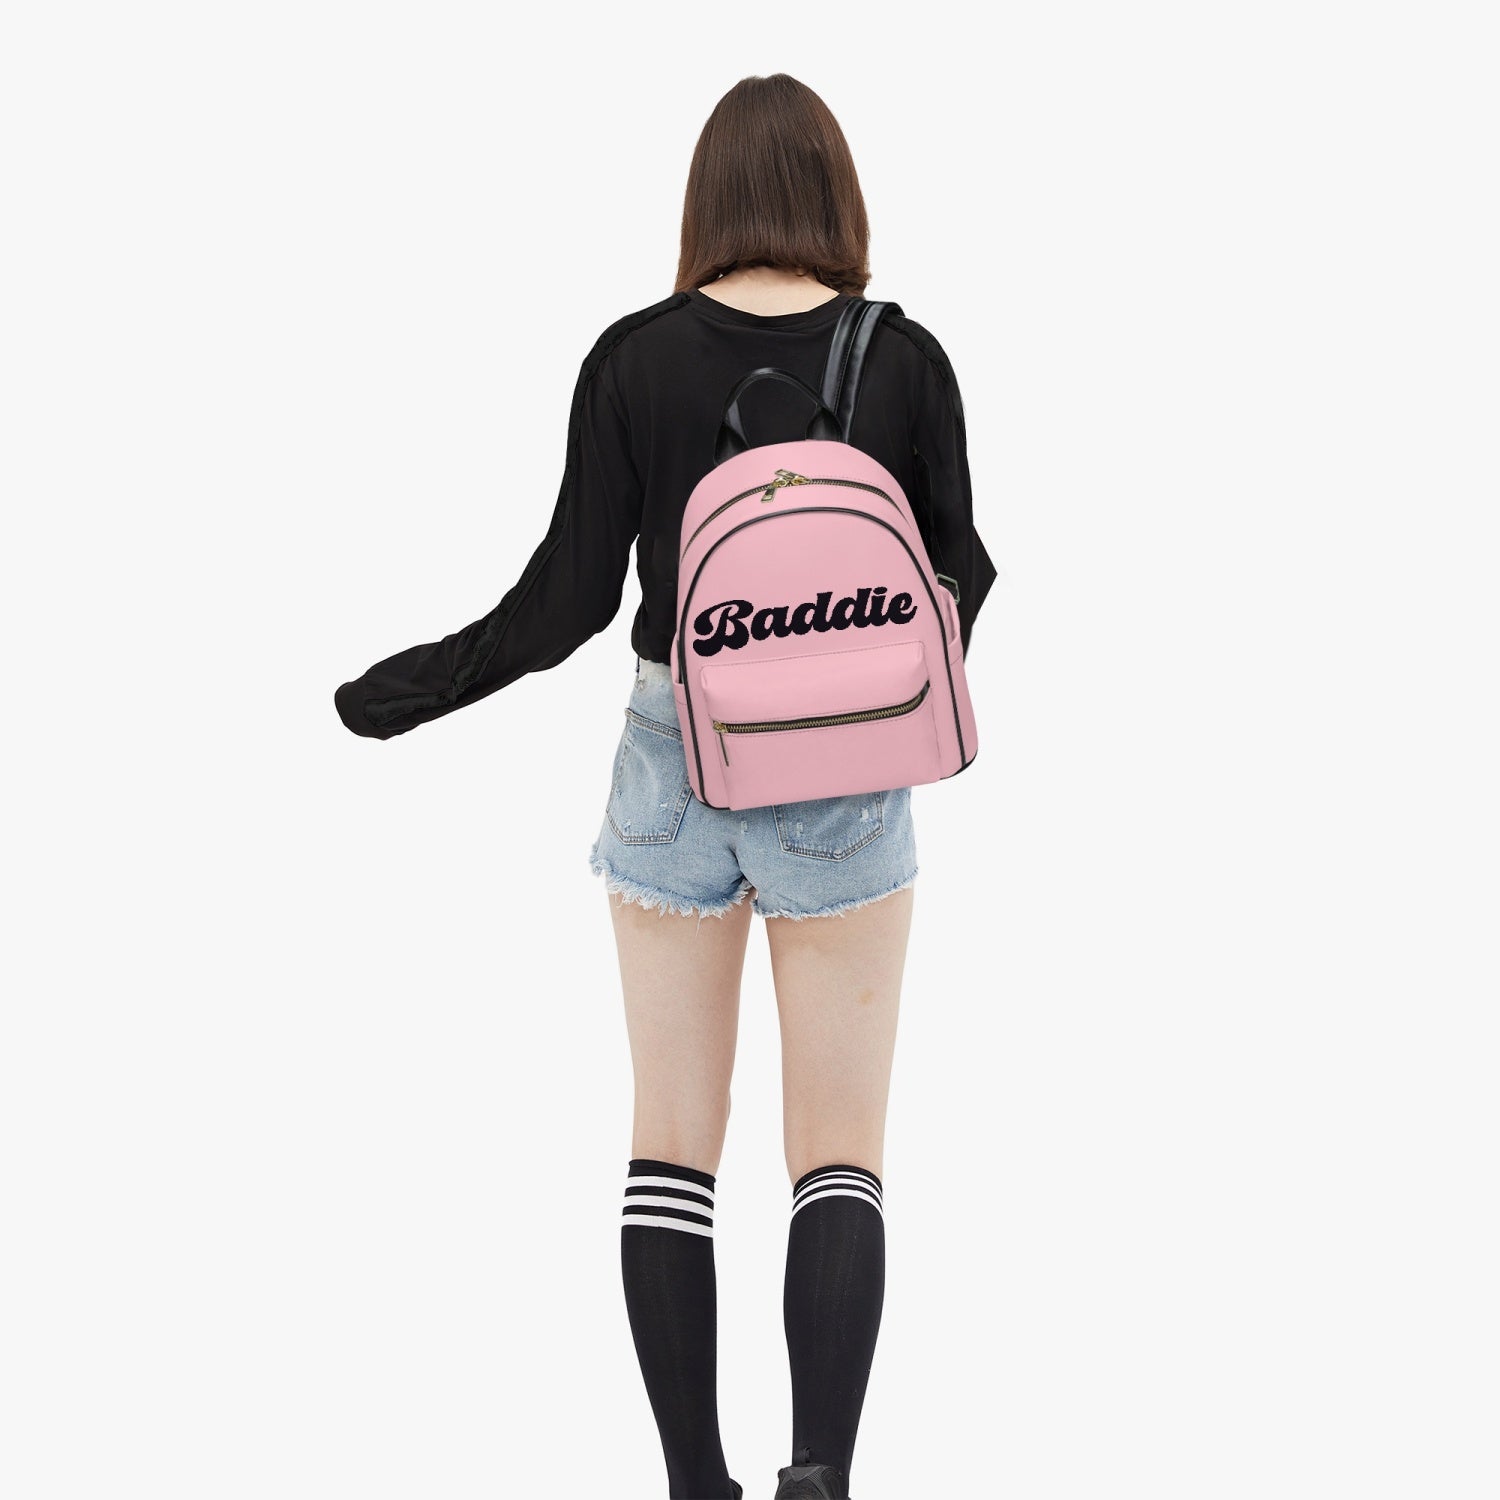 Baddie Backpack